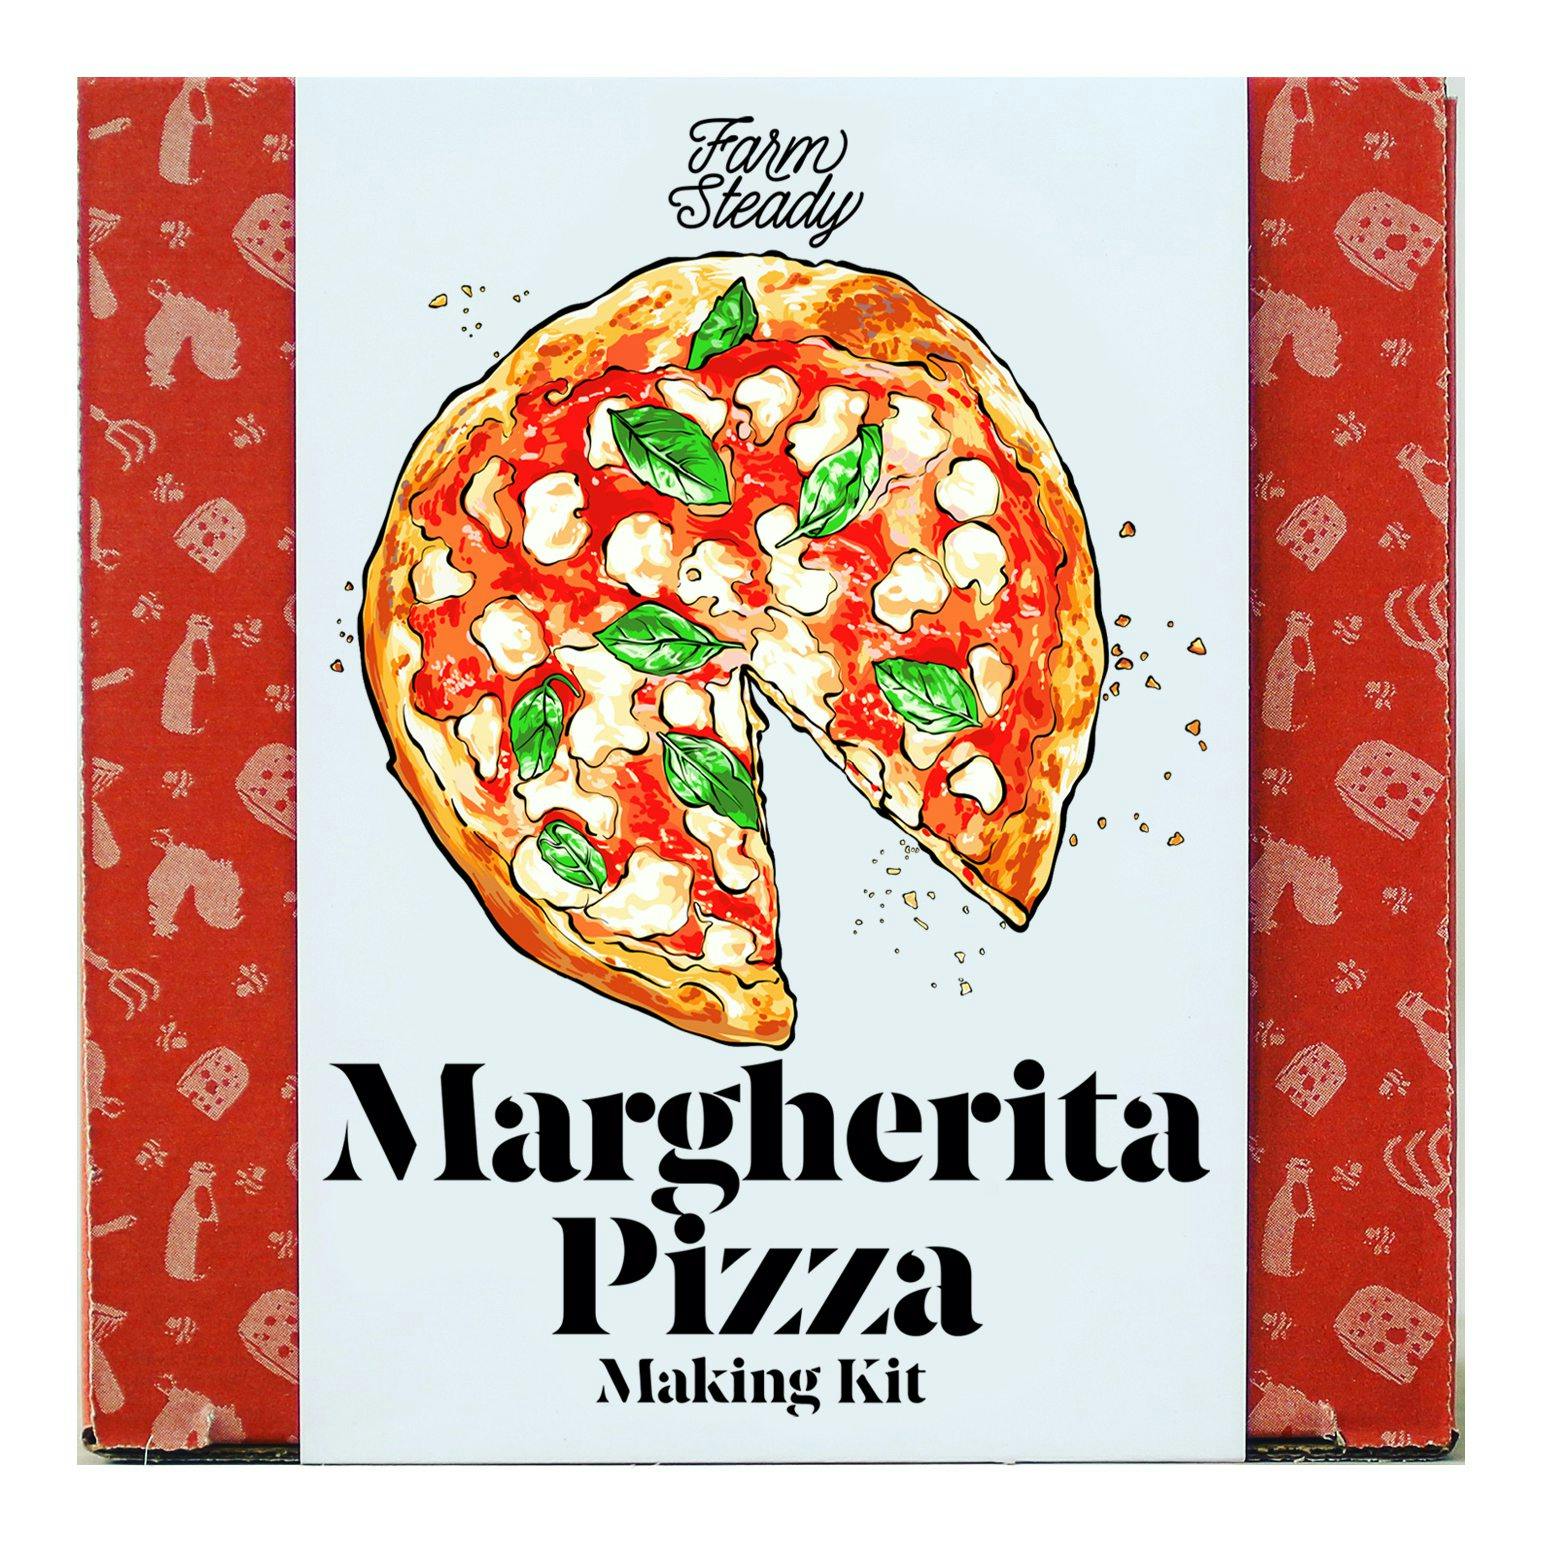 Margarita Pizza Making Kit